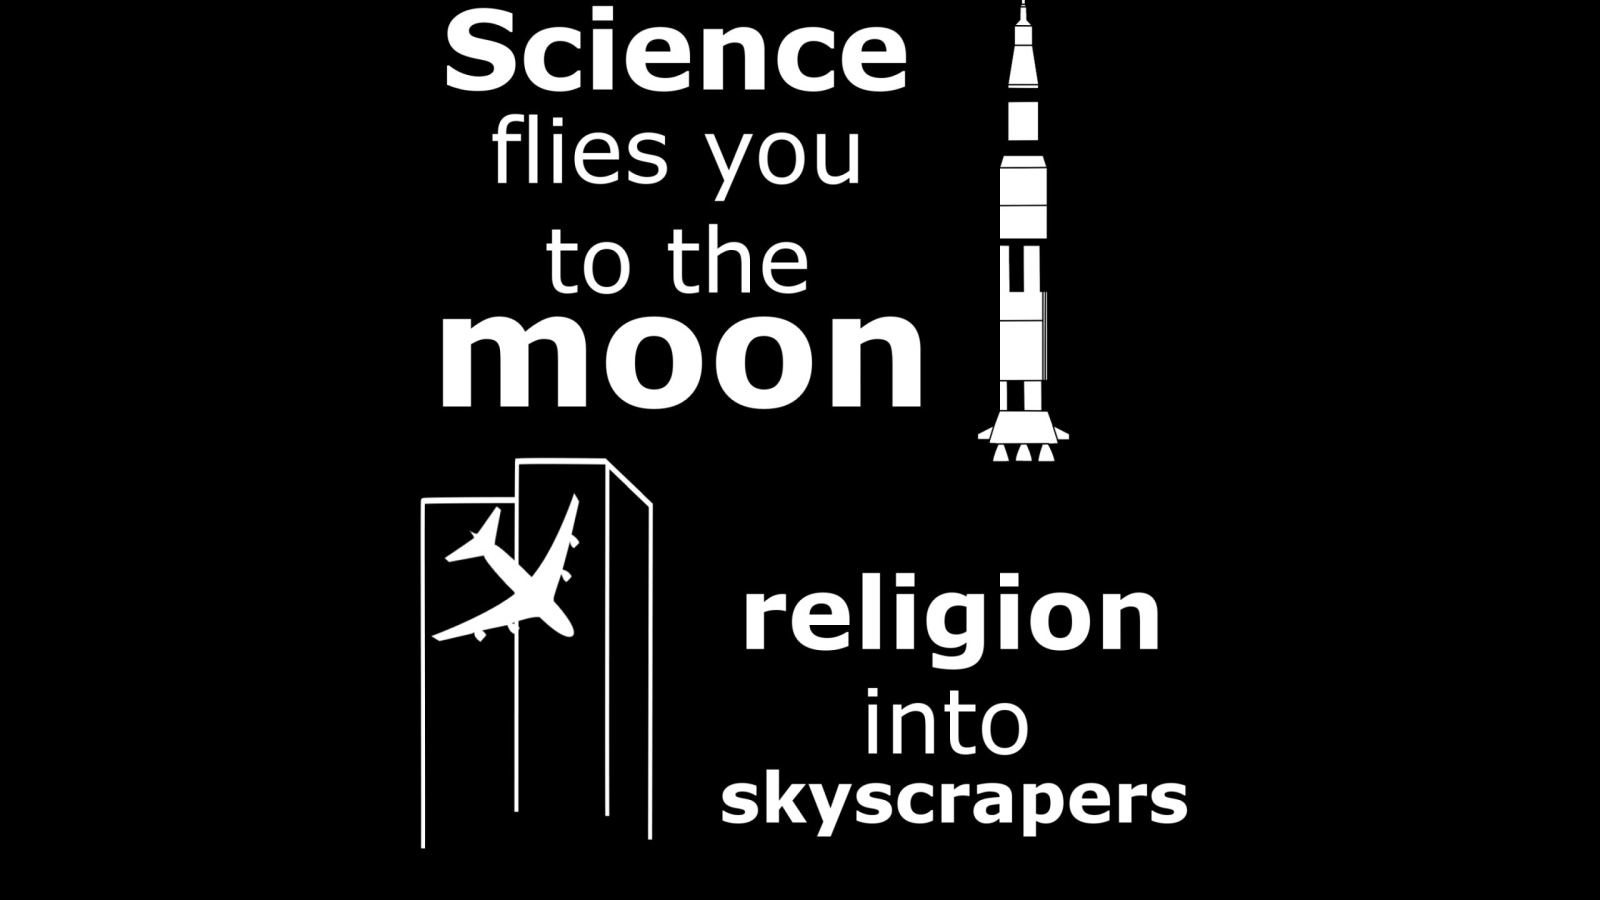 Наука приведет тебя к звездам, религия в небоскребы